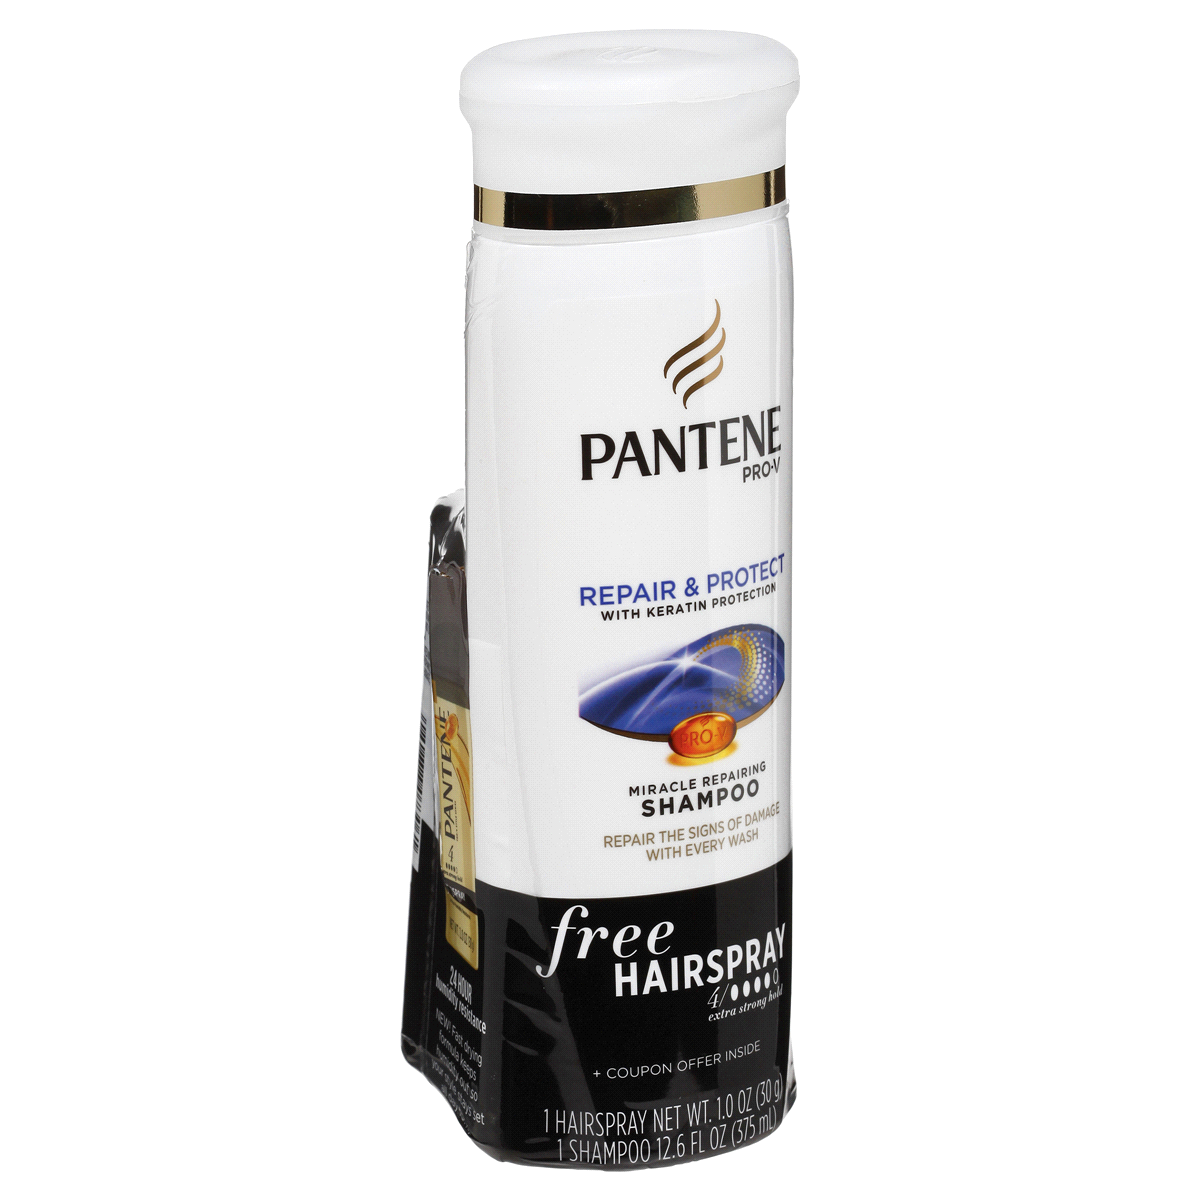 slide 5 of 6, Pantene Pro-V Repair Protect Miracle Repairing Shampoo, 12.6 fl oz